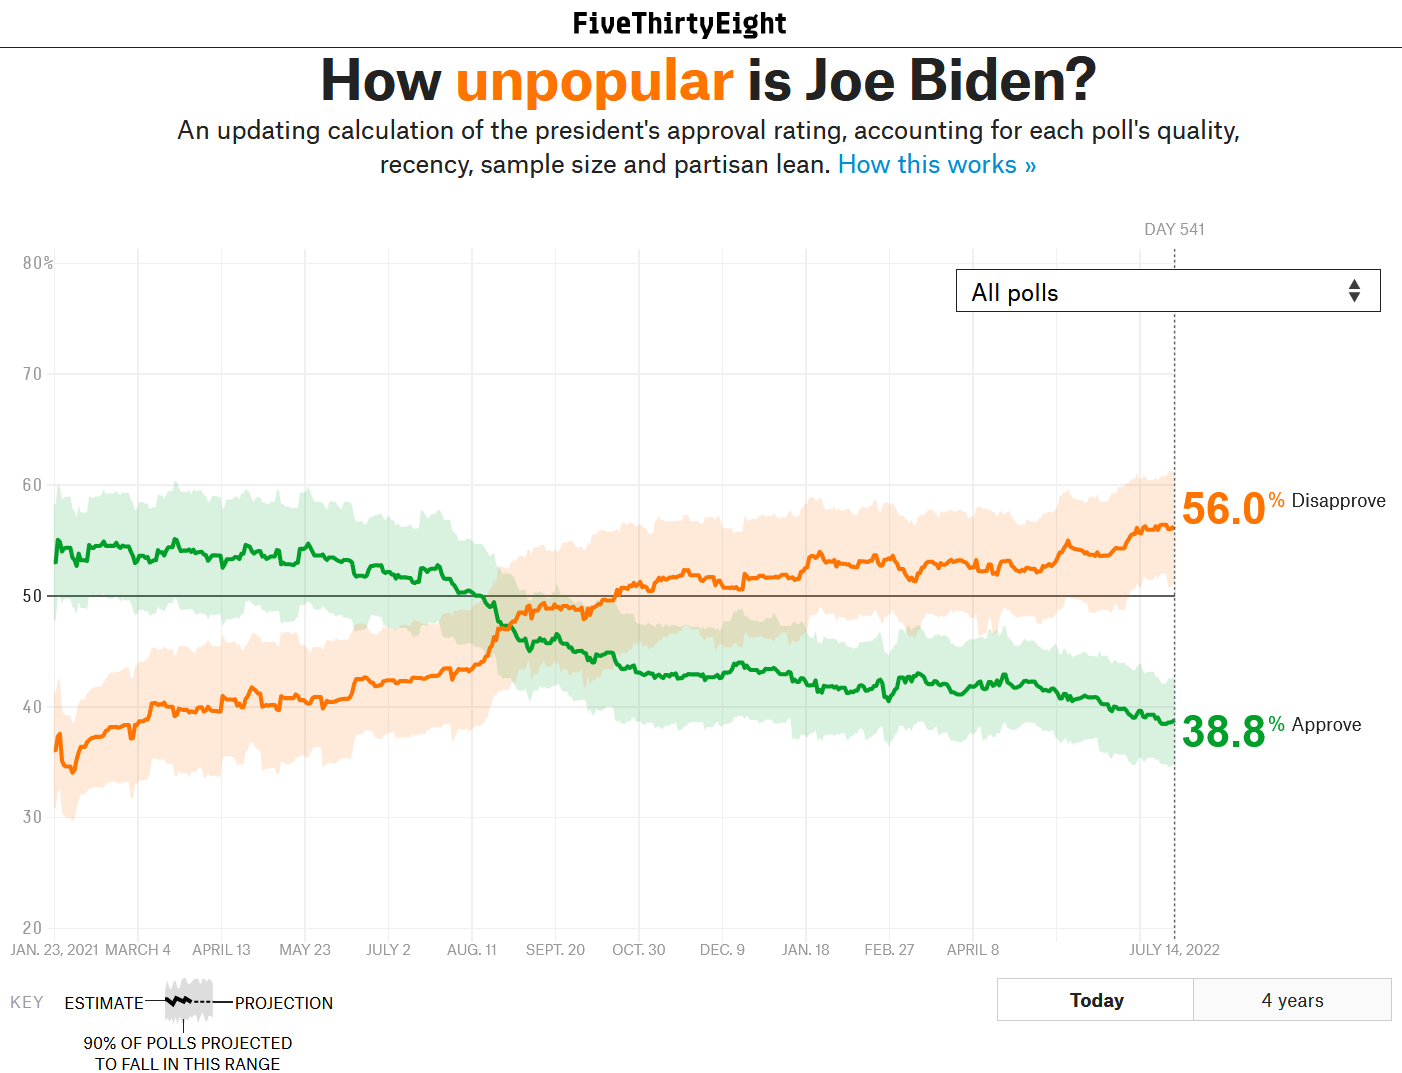 FiveThirtyEight Biden poll tracker - 56.0% Disapprove, 38.8% Approve